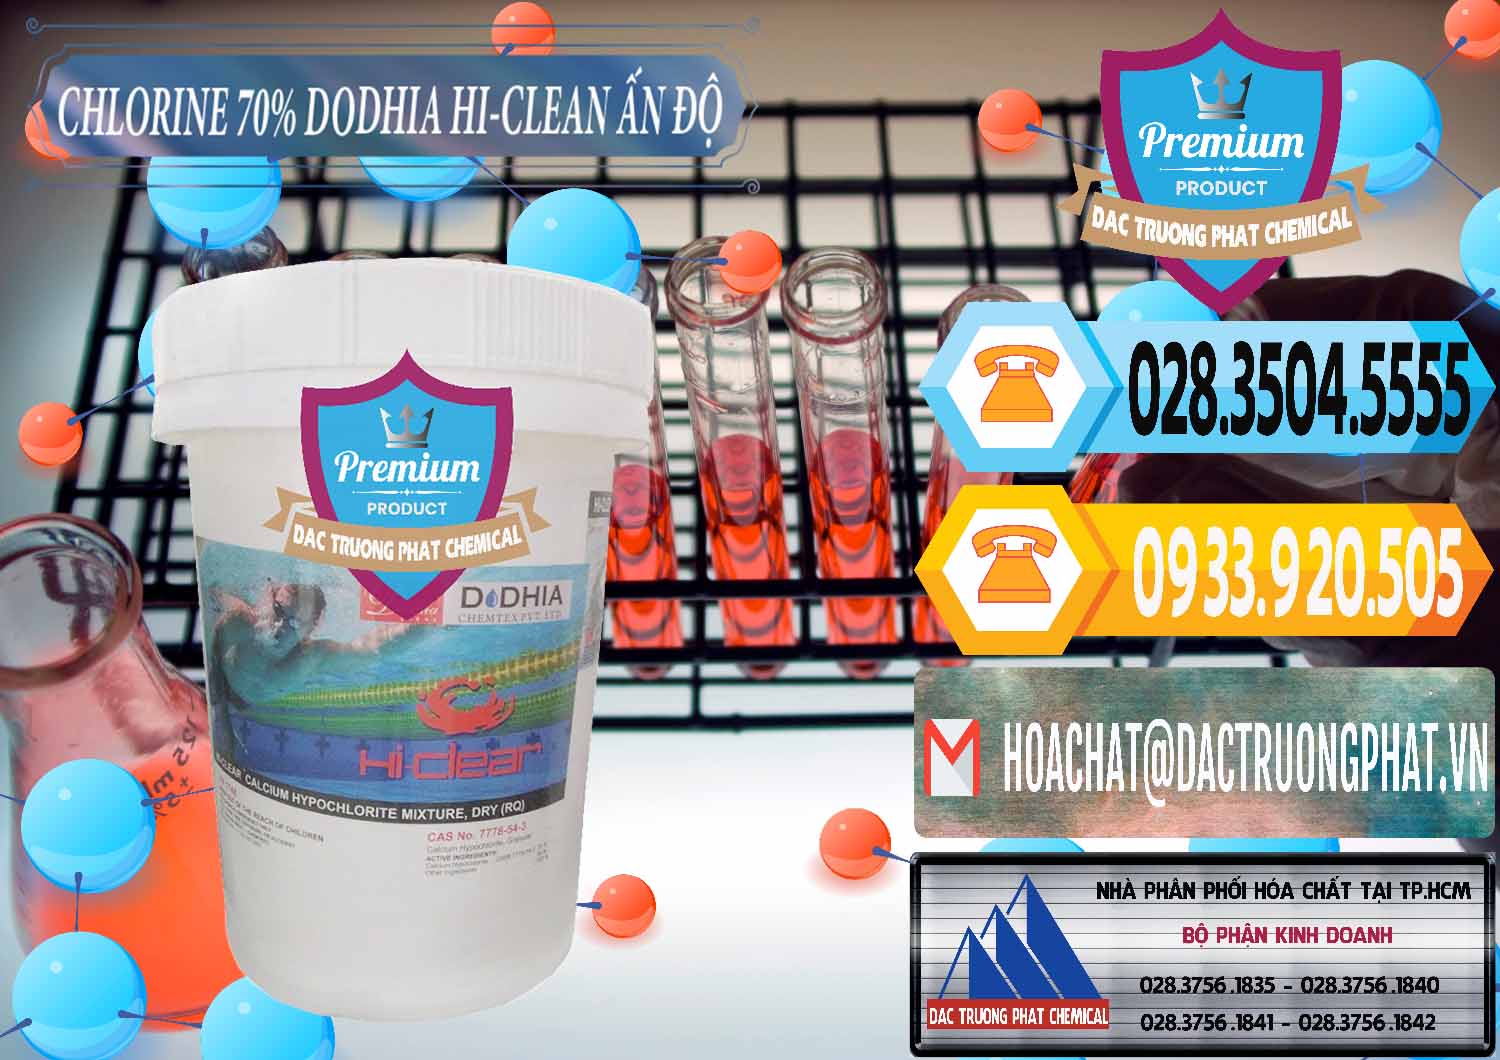 Đơn vị nhập khẩu & bán Chlorine – Clorin 70% Dodhia Hi-Clean Ấn Độ India - 0214 - Đơn vị chuyên kinh doanh & cung cấp hóa chất tại TP.HCM - hoachattayrua.net